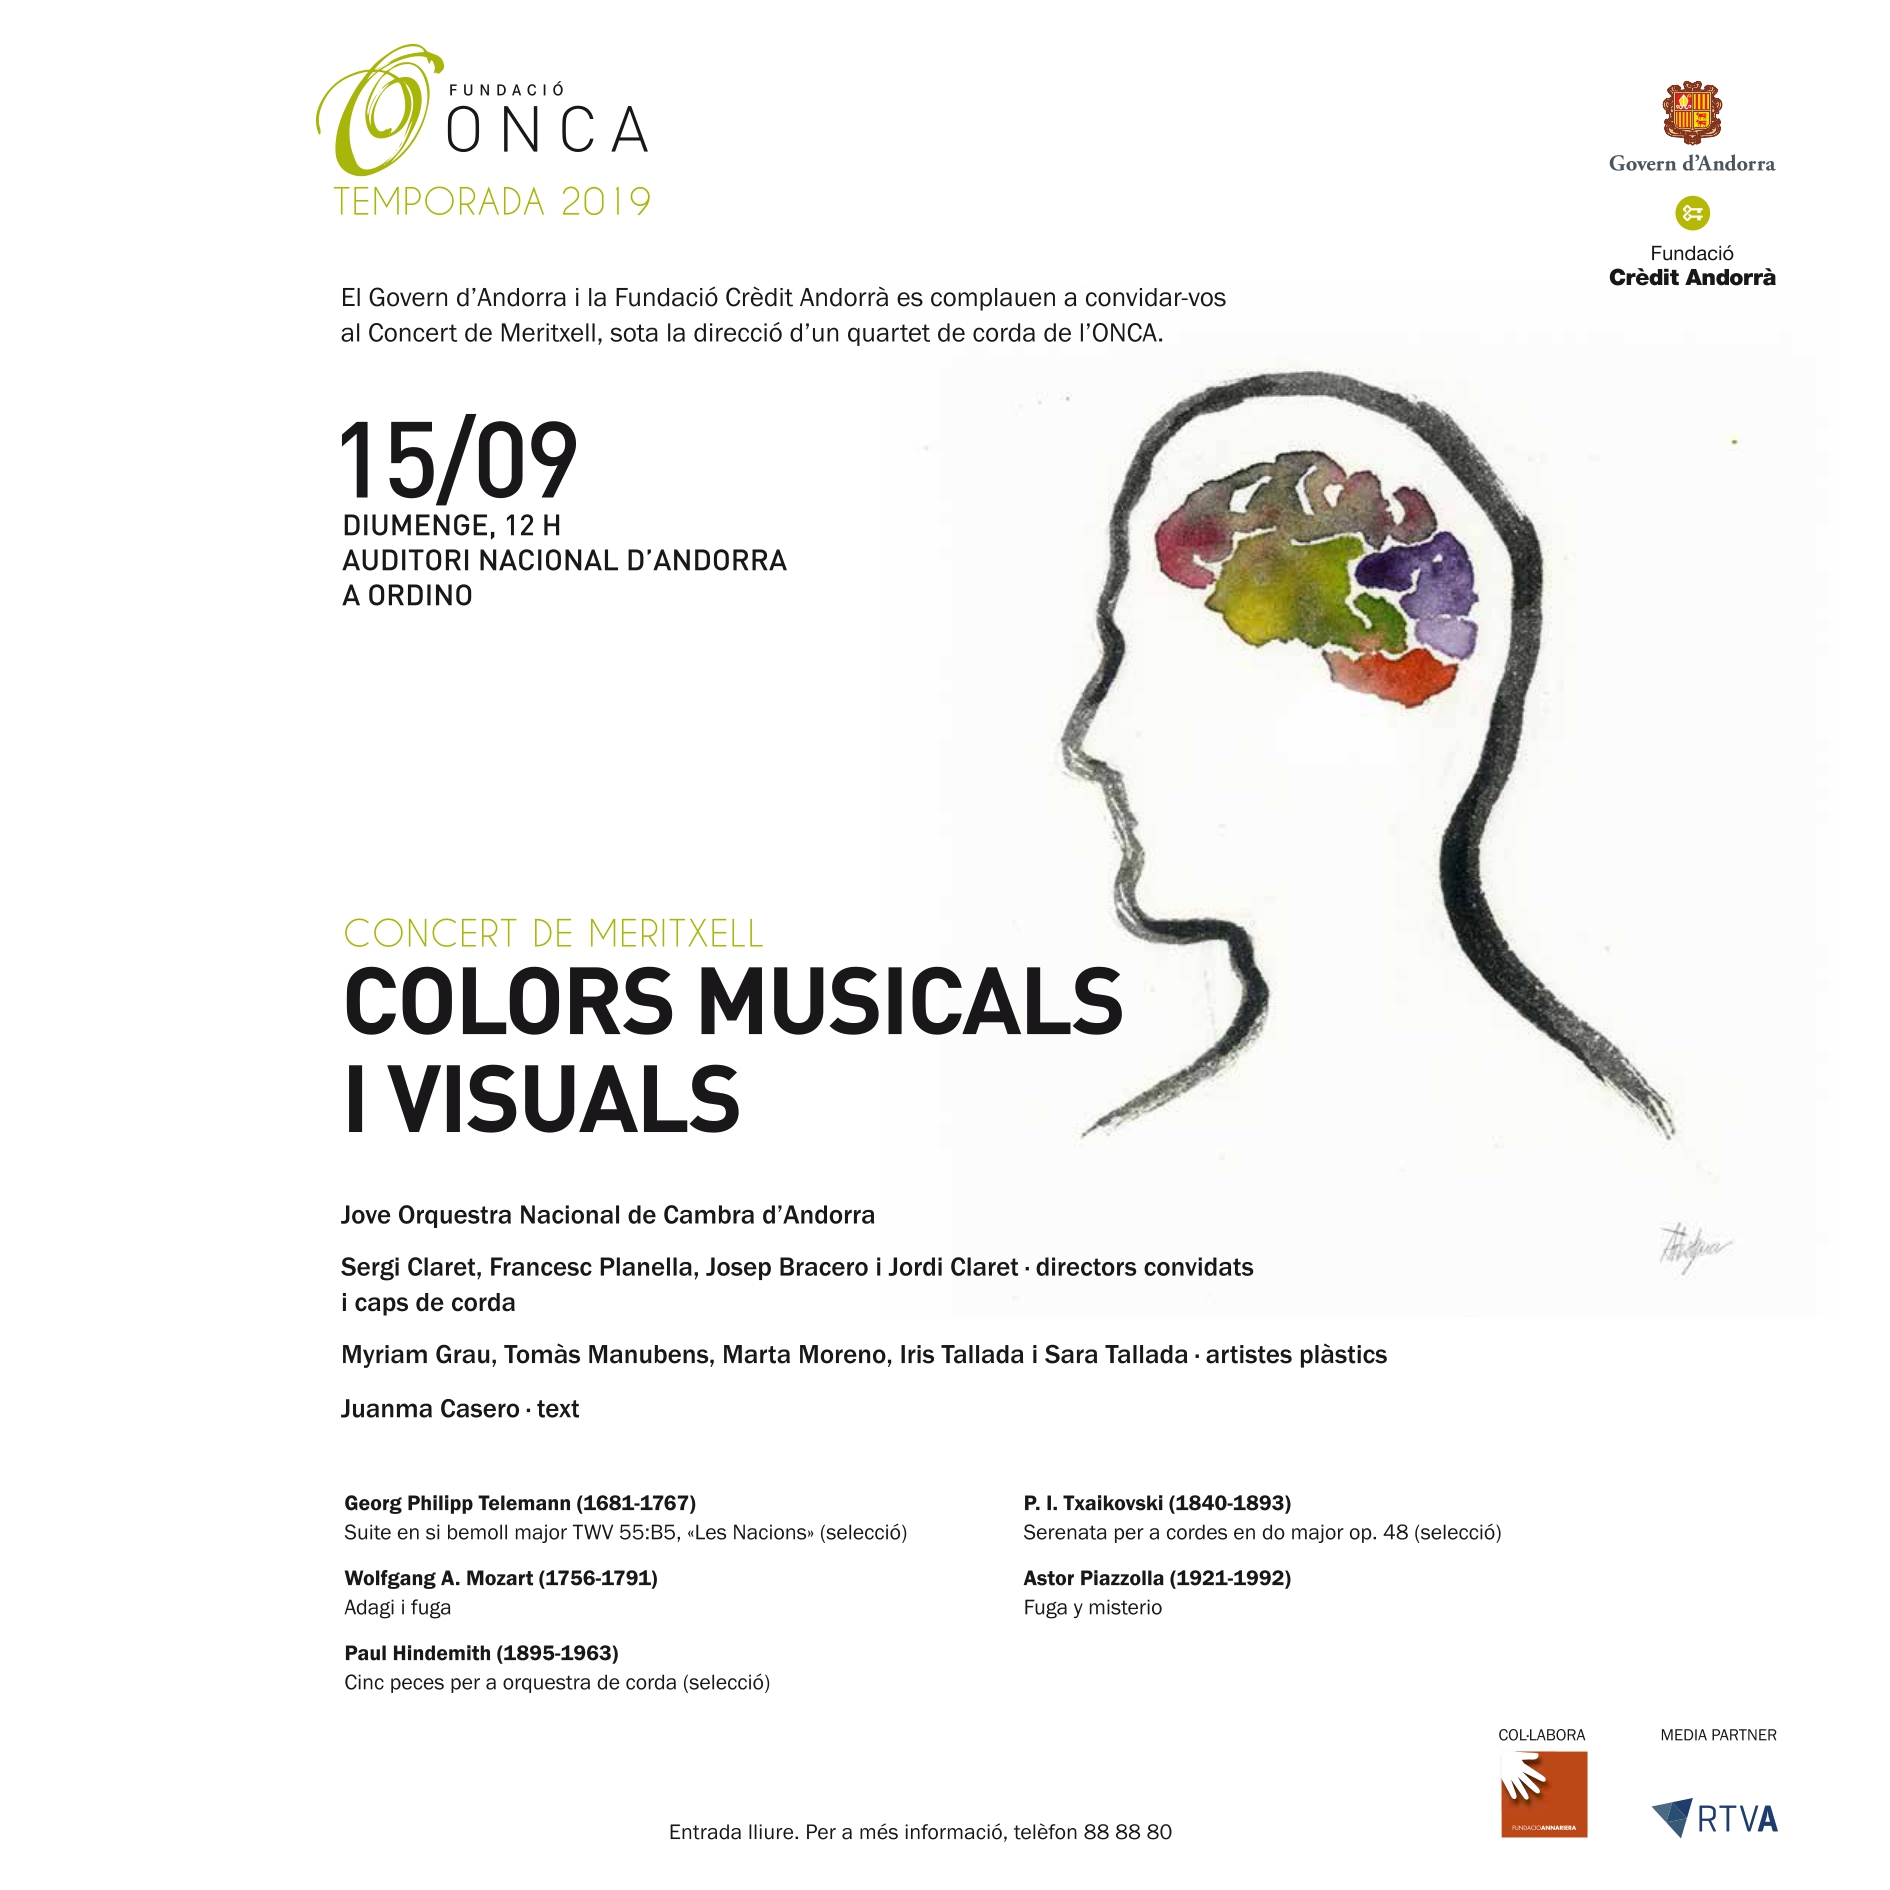 Concert de Meritxell: Colors musicals i visuals